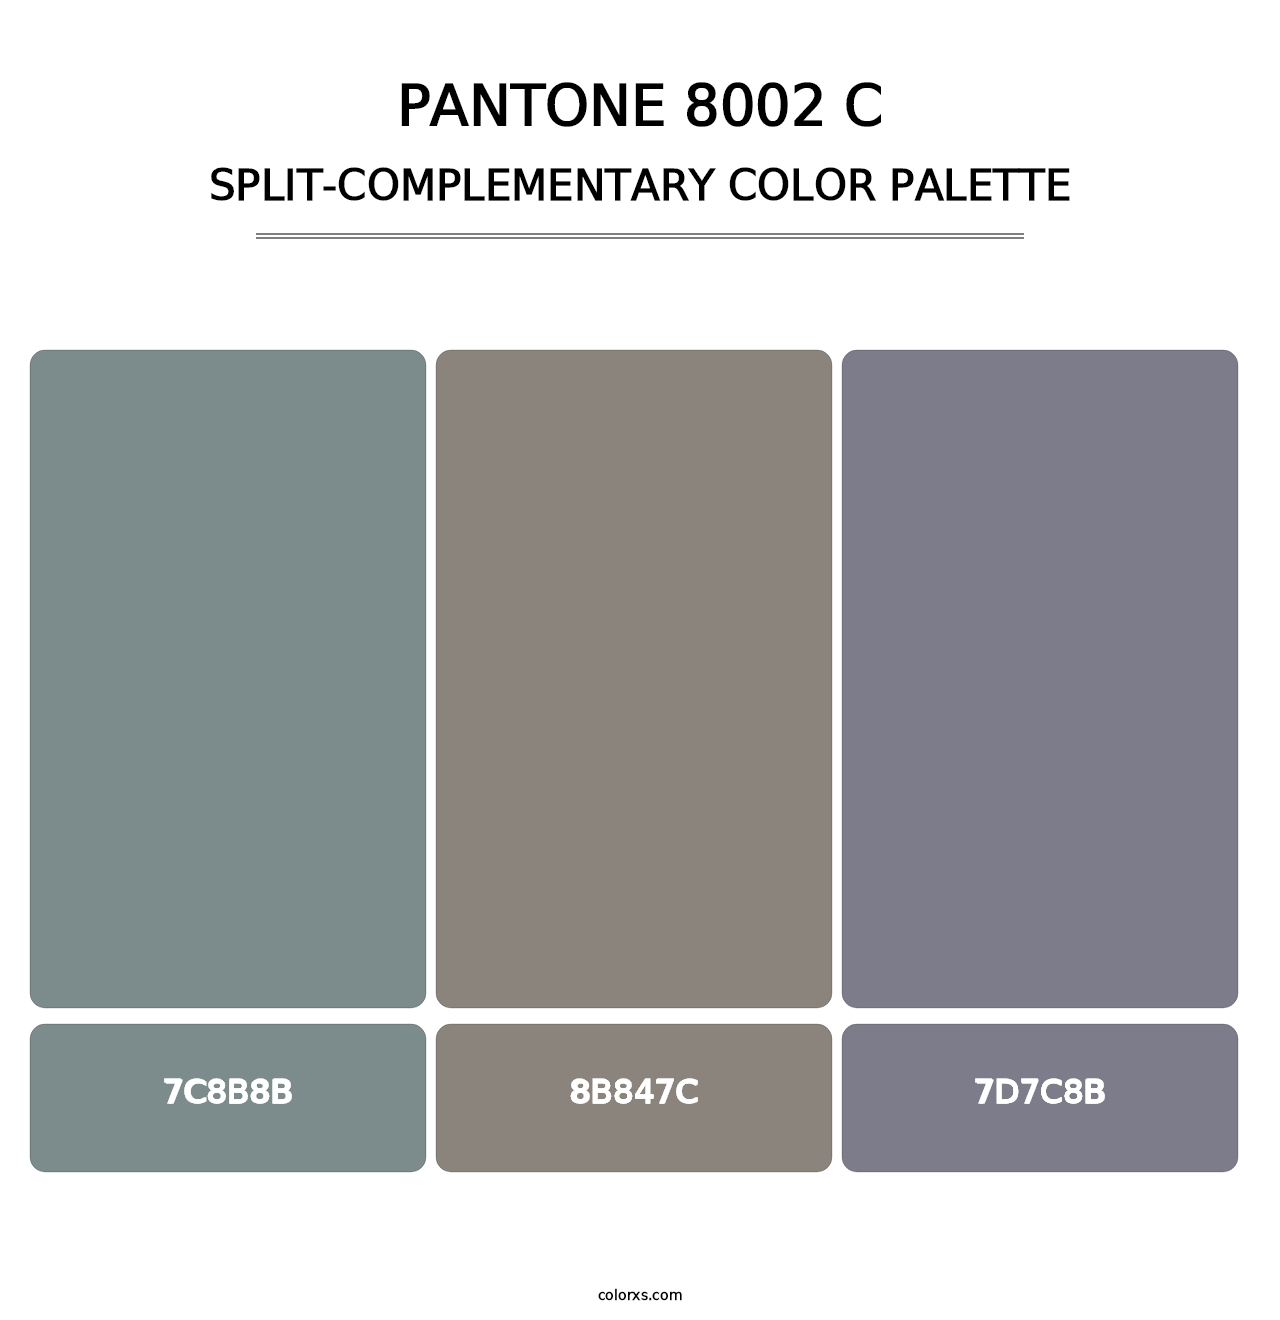 PANTONE 8002 C - Split-Complementary Color Palette